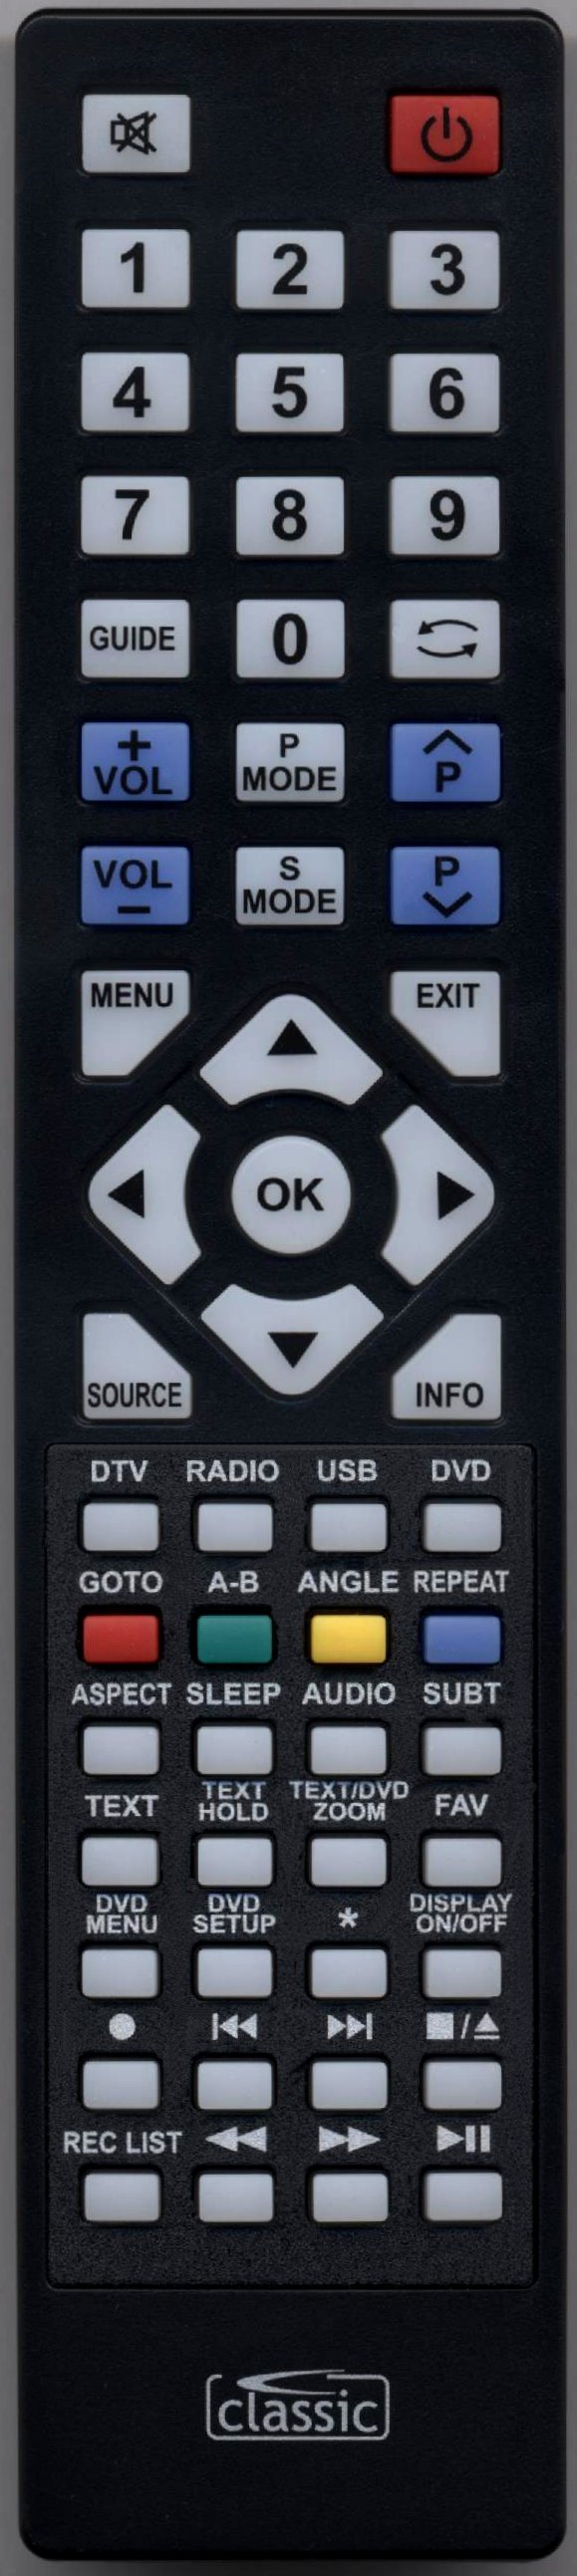 Blaupunkt 40/148I-GB-5B-FHKUP-UK Remote Control